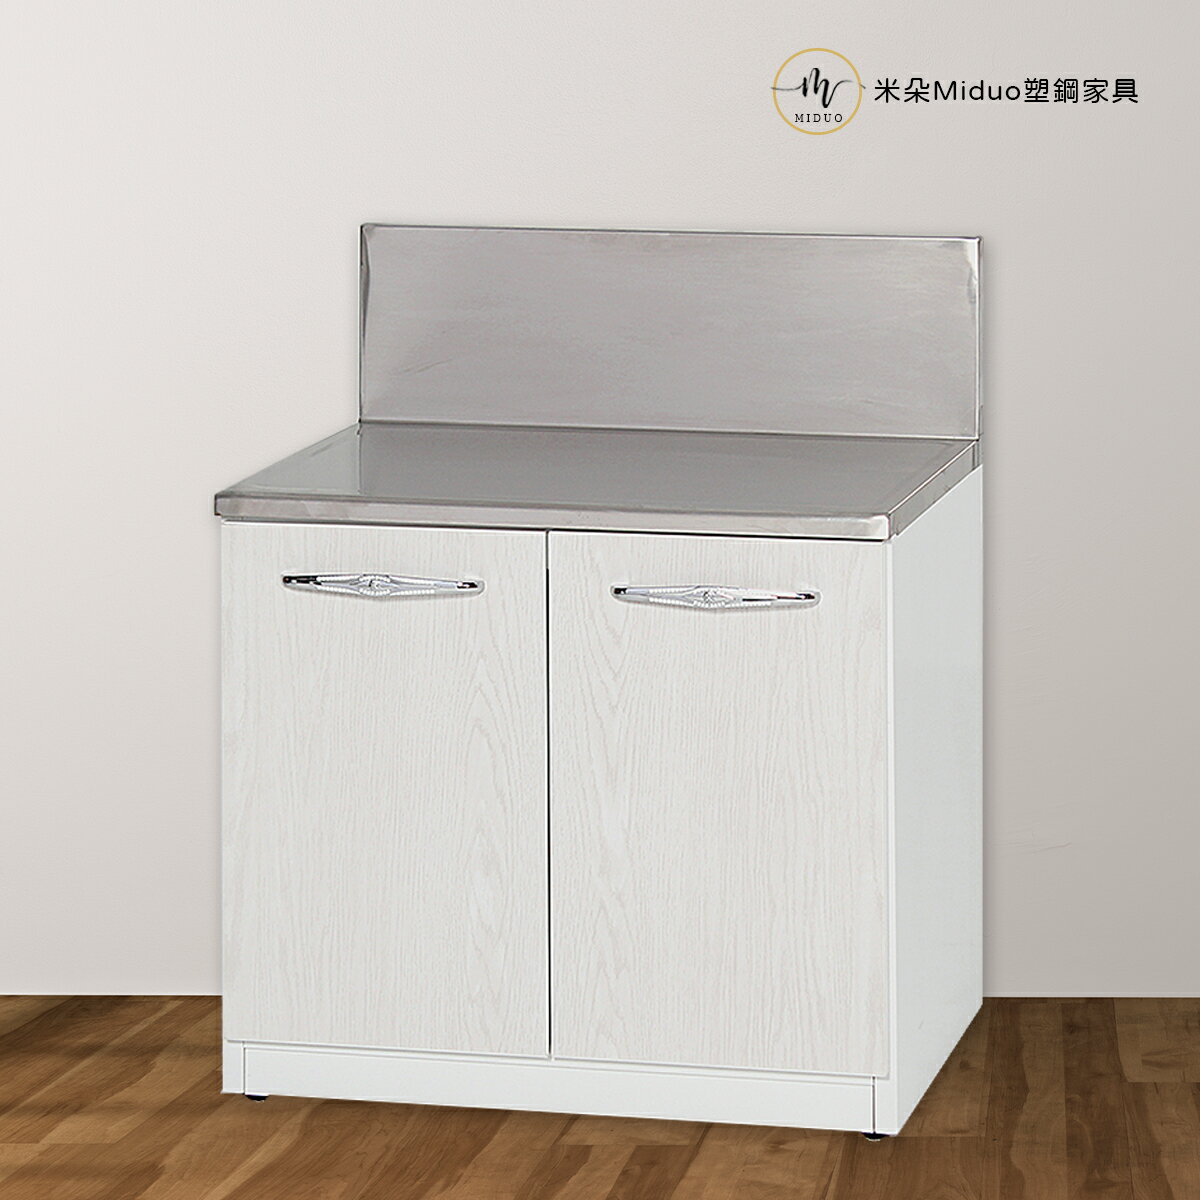 塑鋼爐檯 不鏽鋼流理台 櫥櫃 防水塑鋼家具【米朵Miduo】